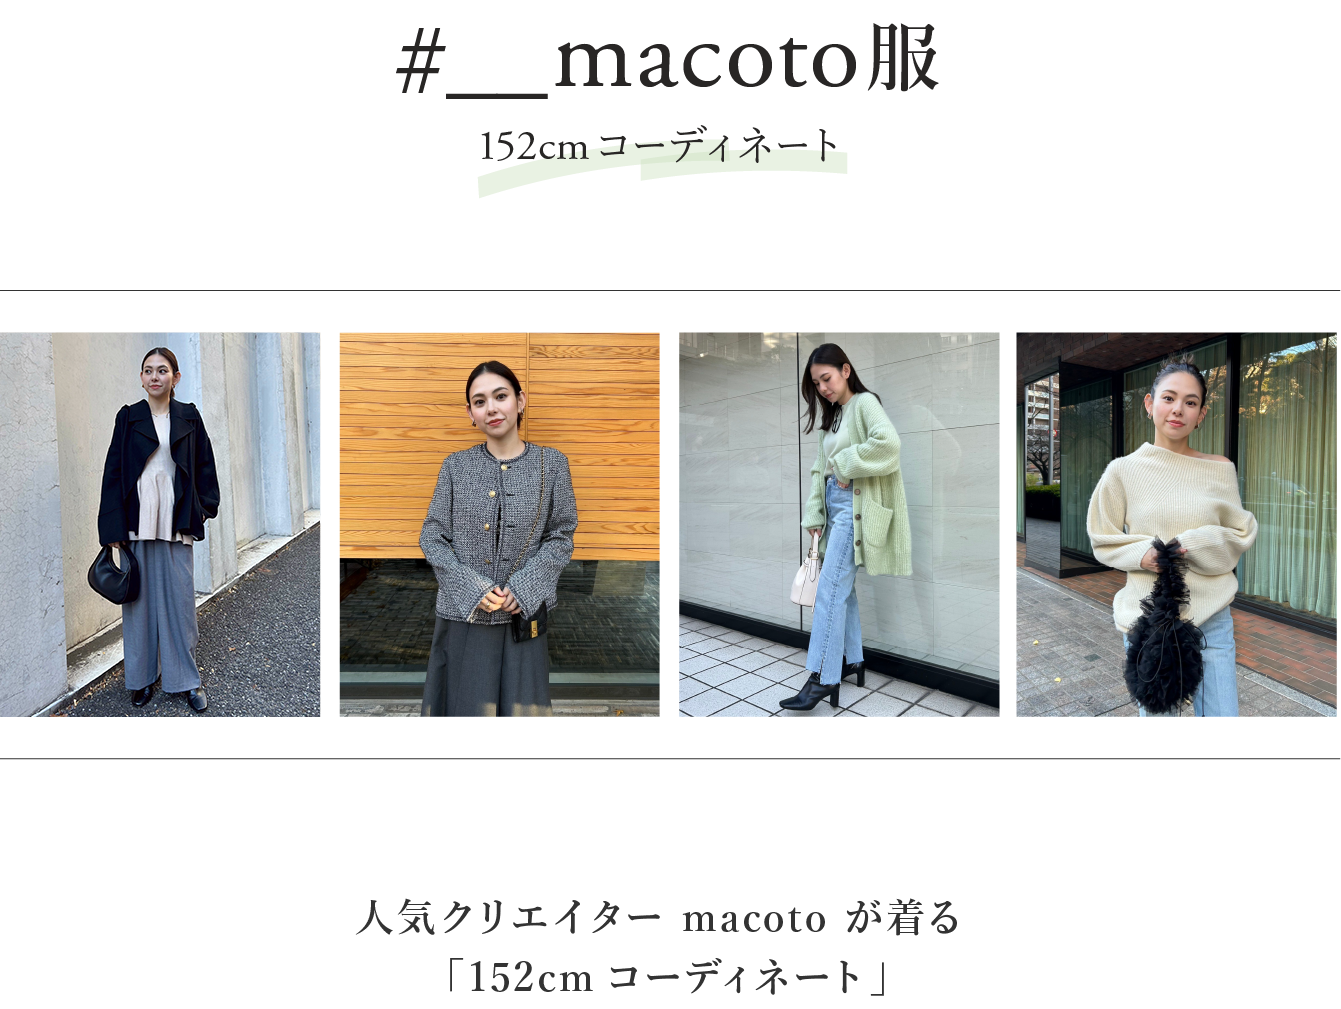 macoto服152cmコーディネート 人気クリエイター macoto が着る          「152cmコーディネート」